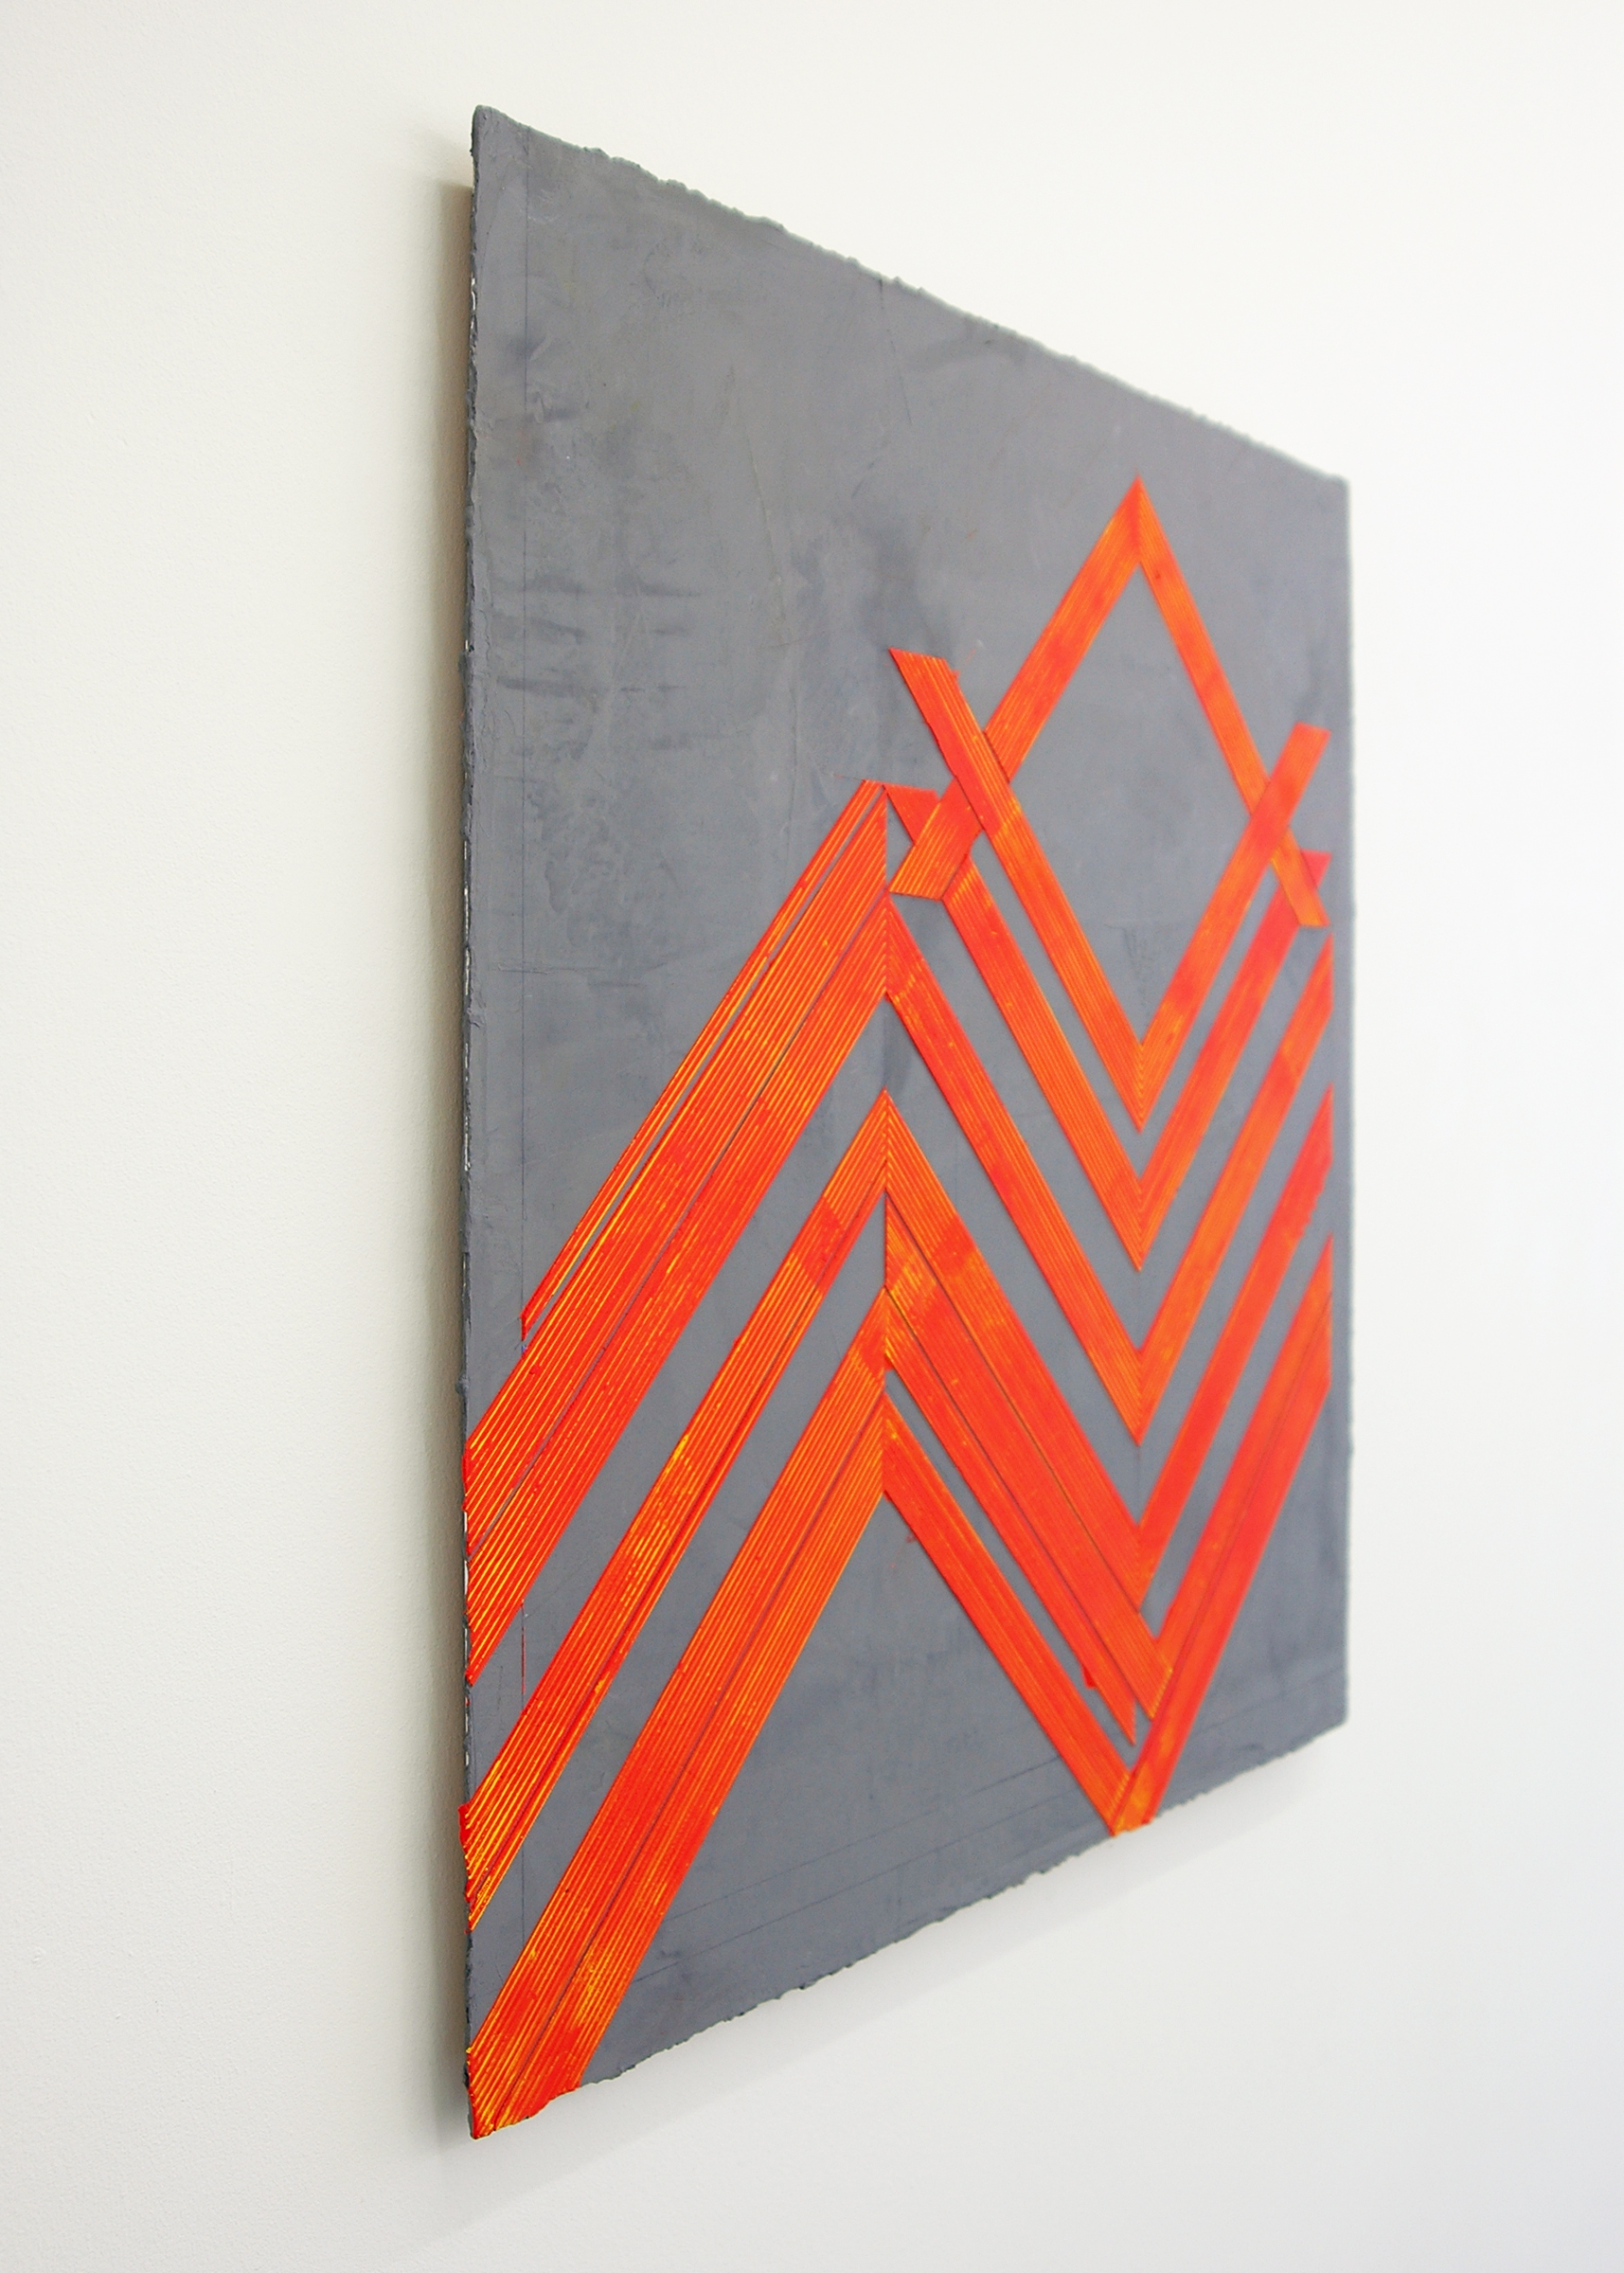   ELISE FERGUSON  (3/4 view) &nbsp;N V V , pigmented plaster on MDF panel, 30" x 30", 2014 